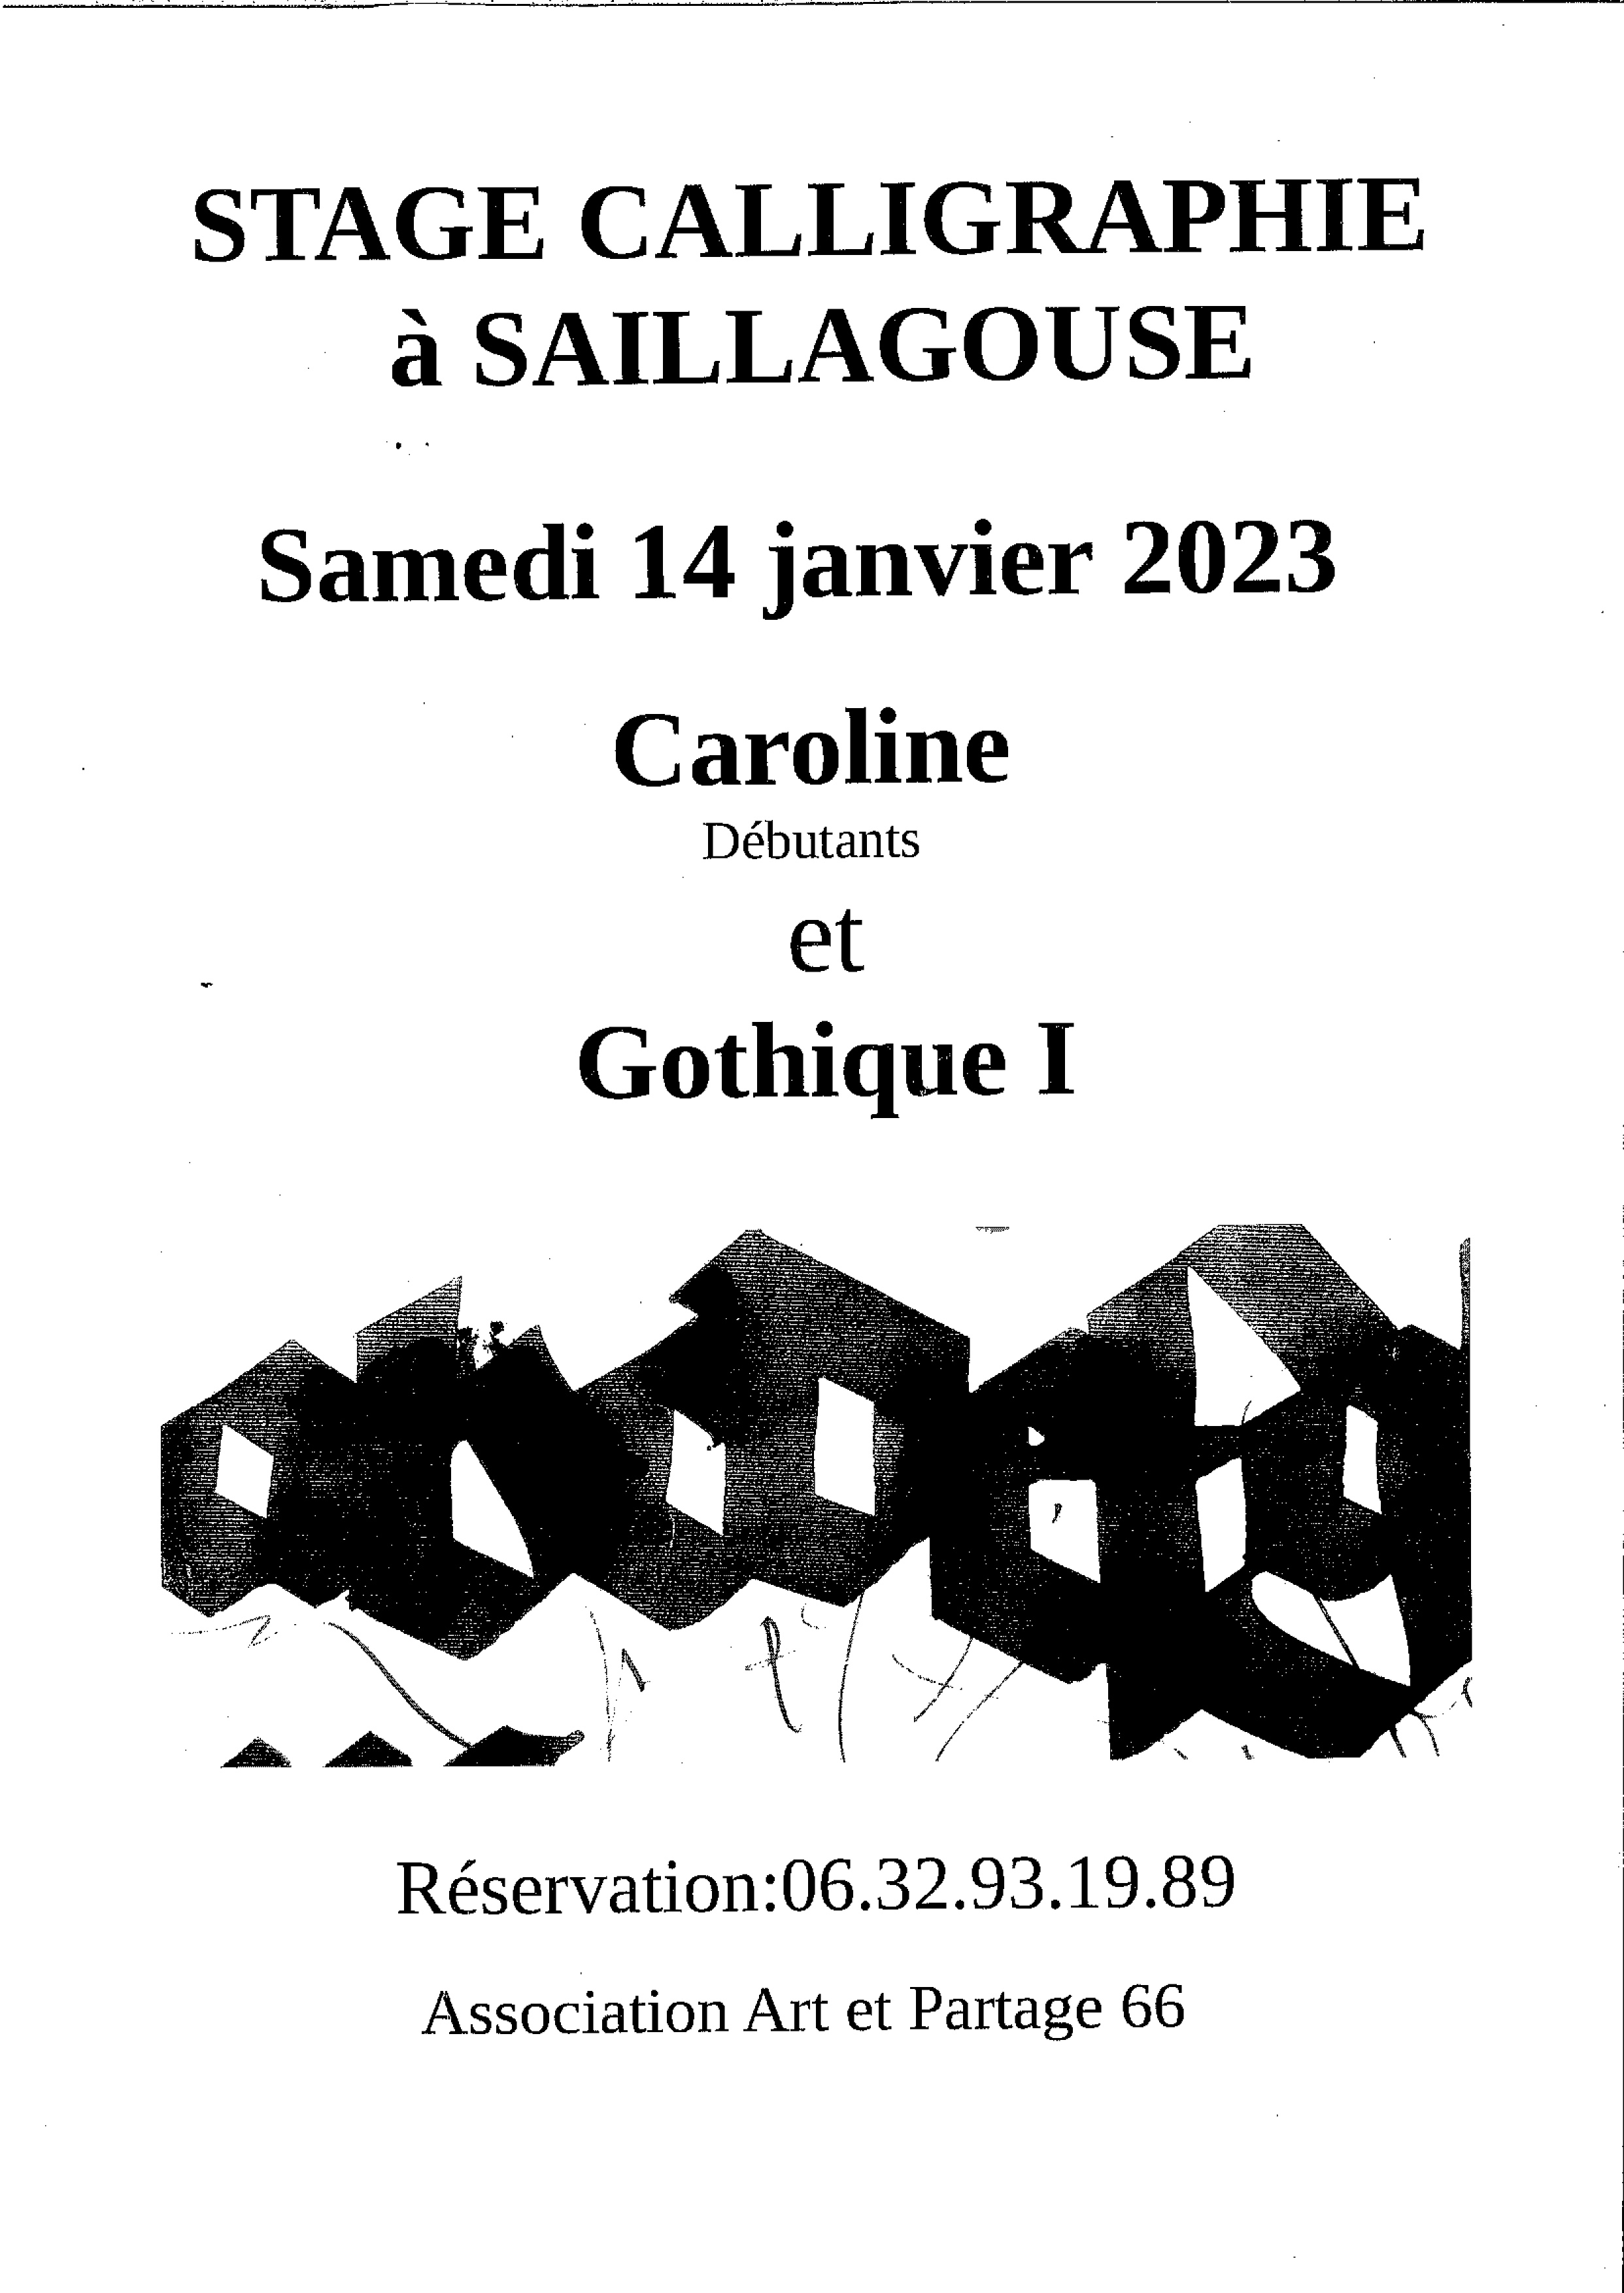 STAGE CALLIGRAPHIE – SAILLAGOUSE